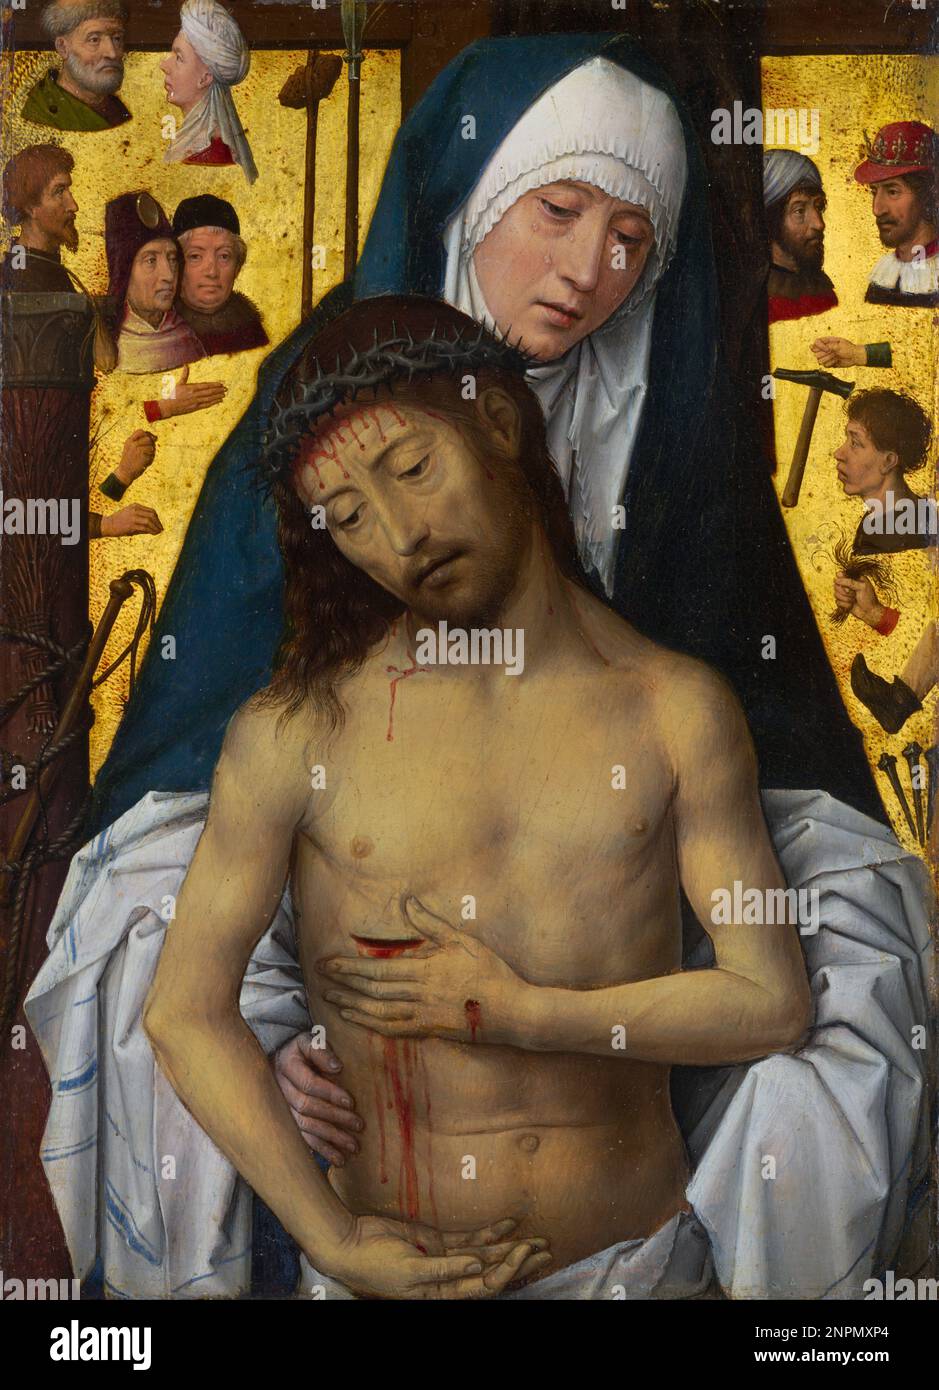 L'homme des Sorrows dans les bras de la Vierge, 1475, peinture de Hans Memling Banque D'Images